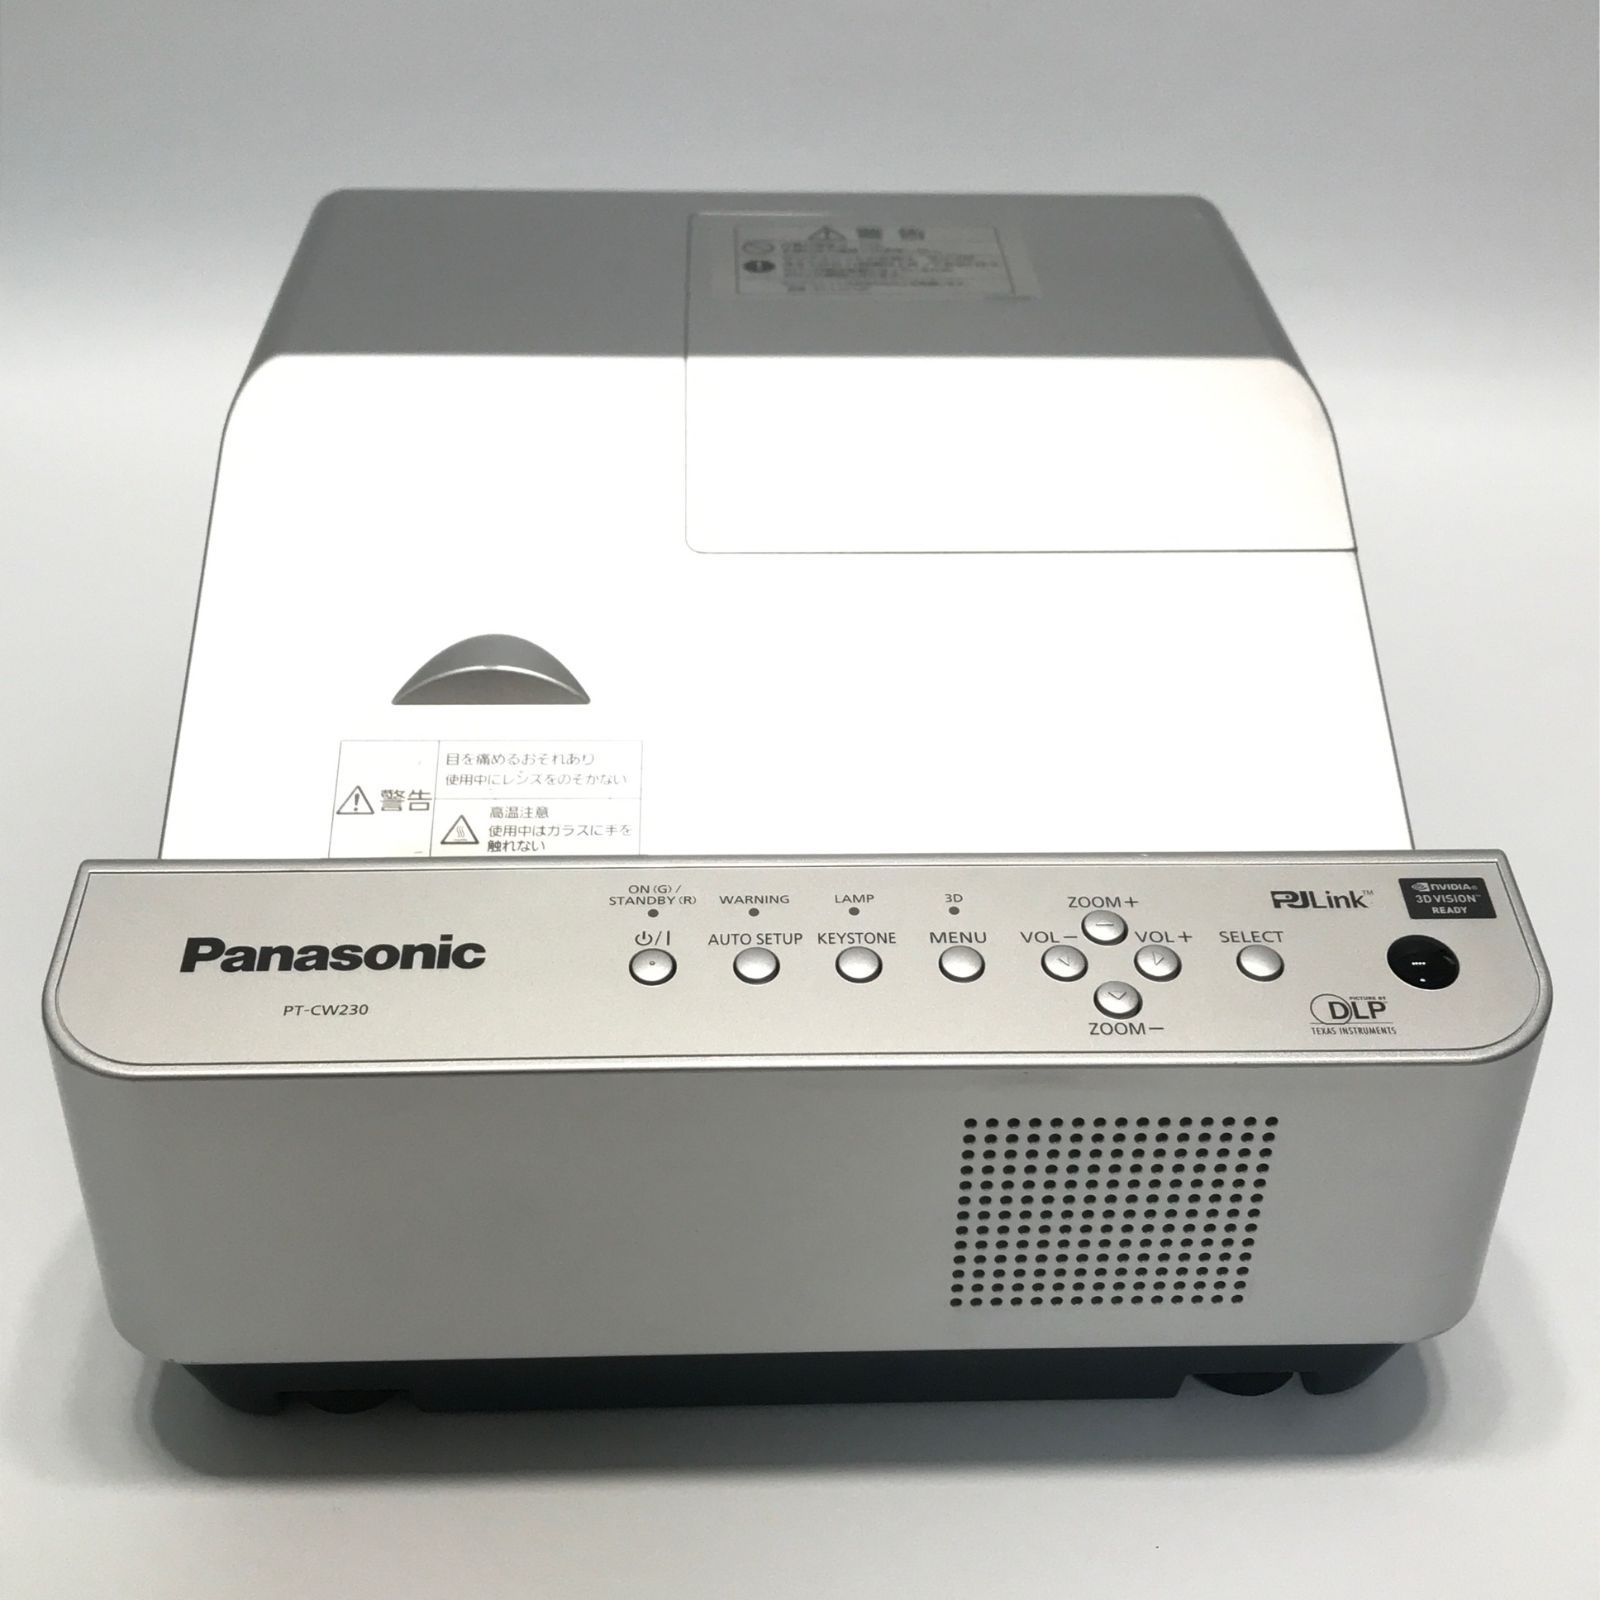 【特注製作】ランプ使用634時間 パナソニック DLPプロジェクター PT-DW640S 天吊り金具付き 2015年製 Panasonic 本体